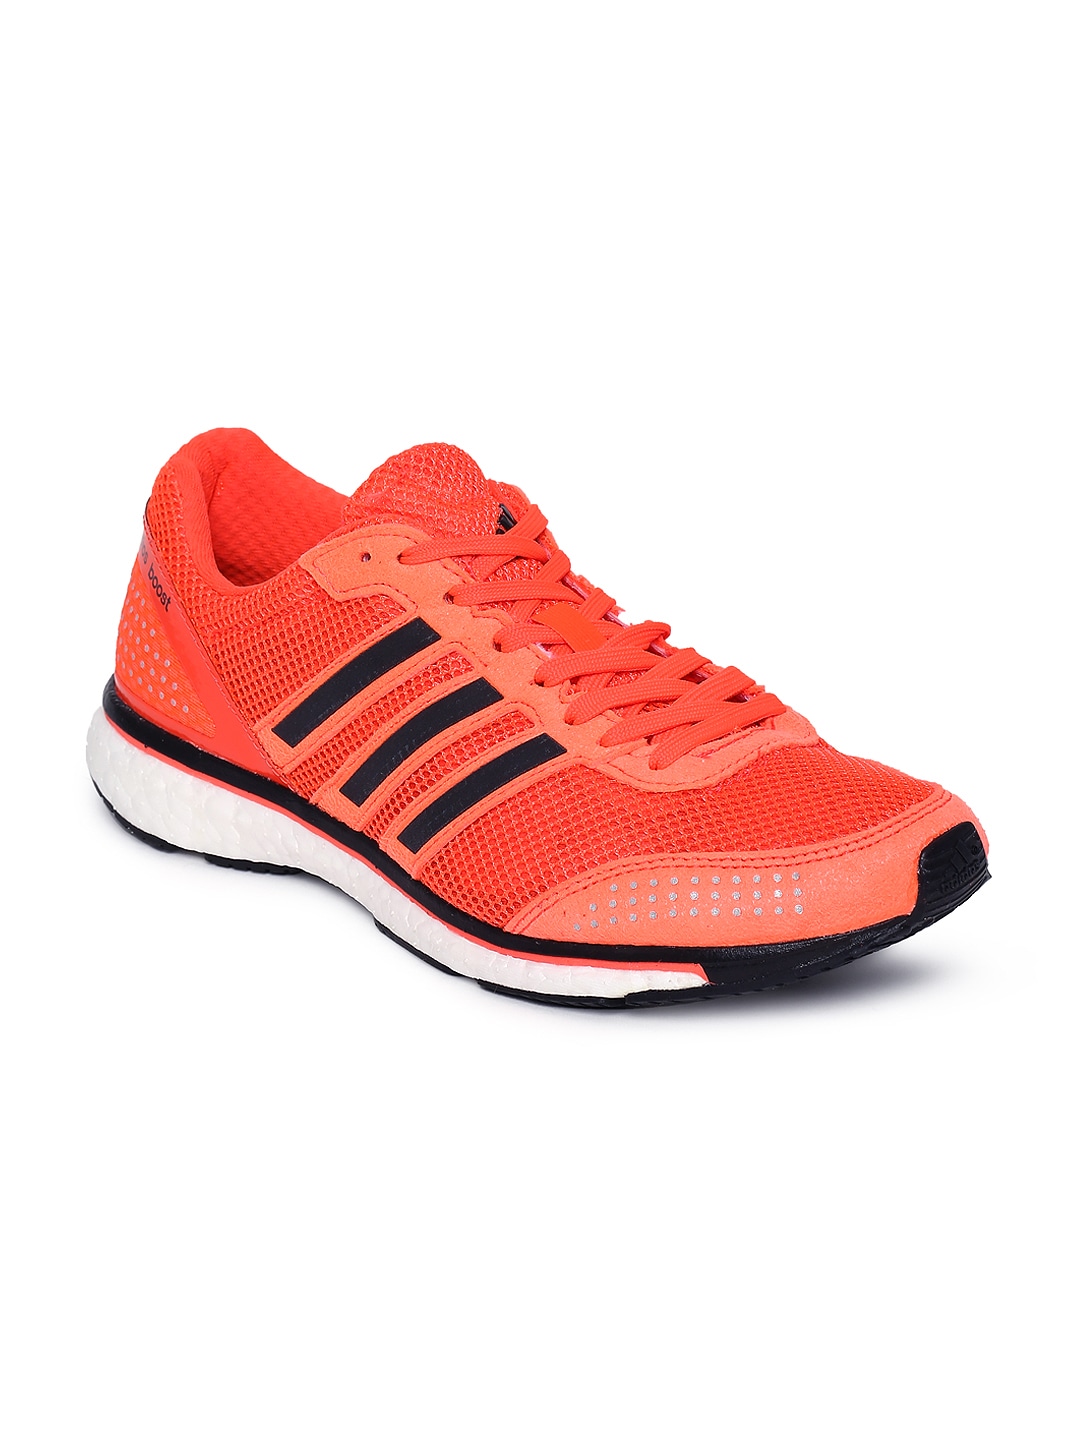 Buy Adidas Men Neon Orange Adizero Adios Boost 2 M Running Shoes - 634